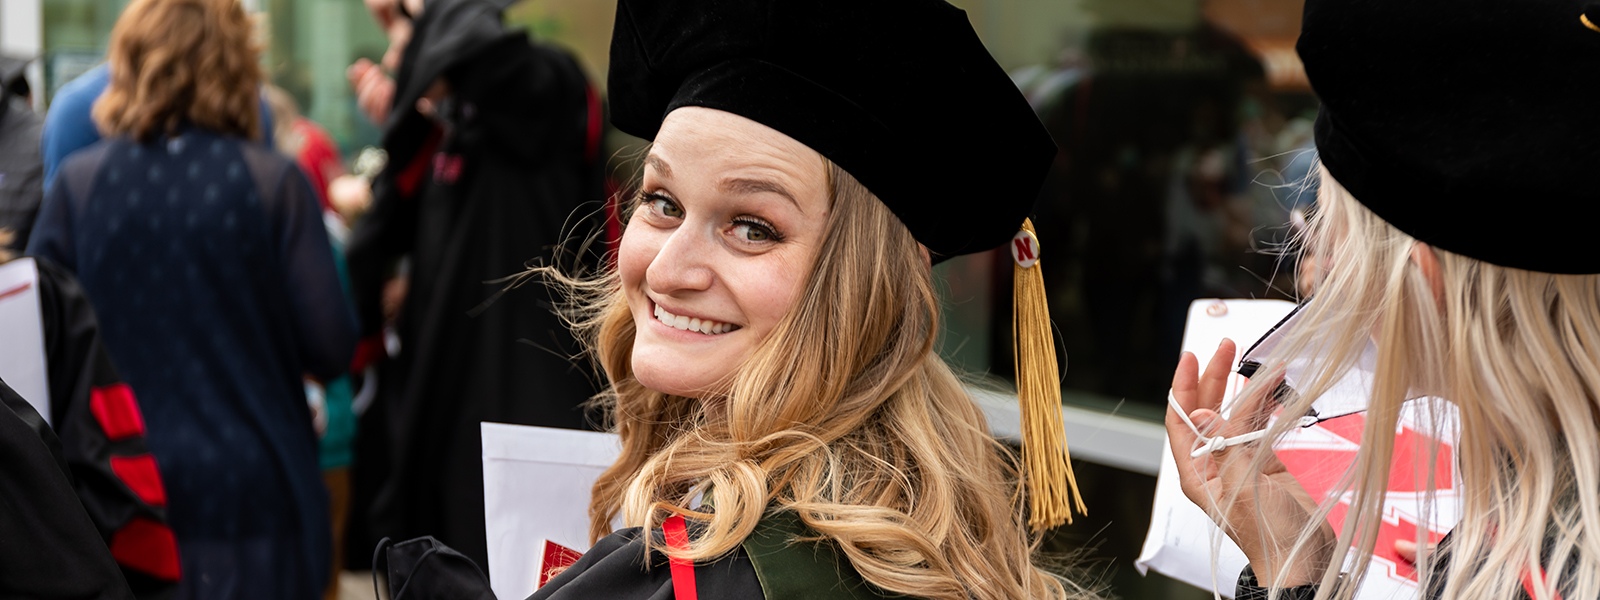 Laura Muller smiles after graduating from the Nebraska AuD program